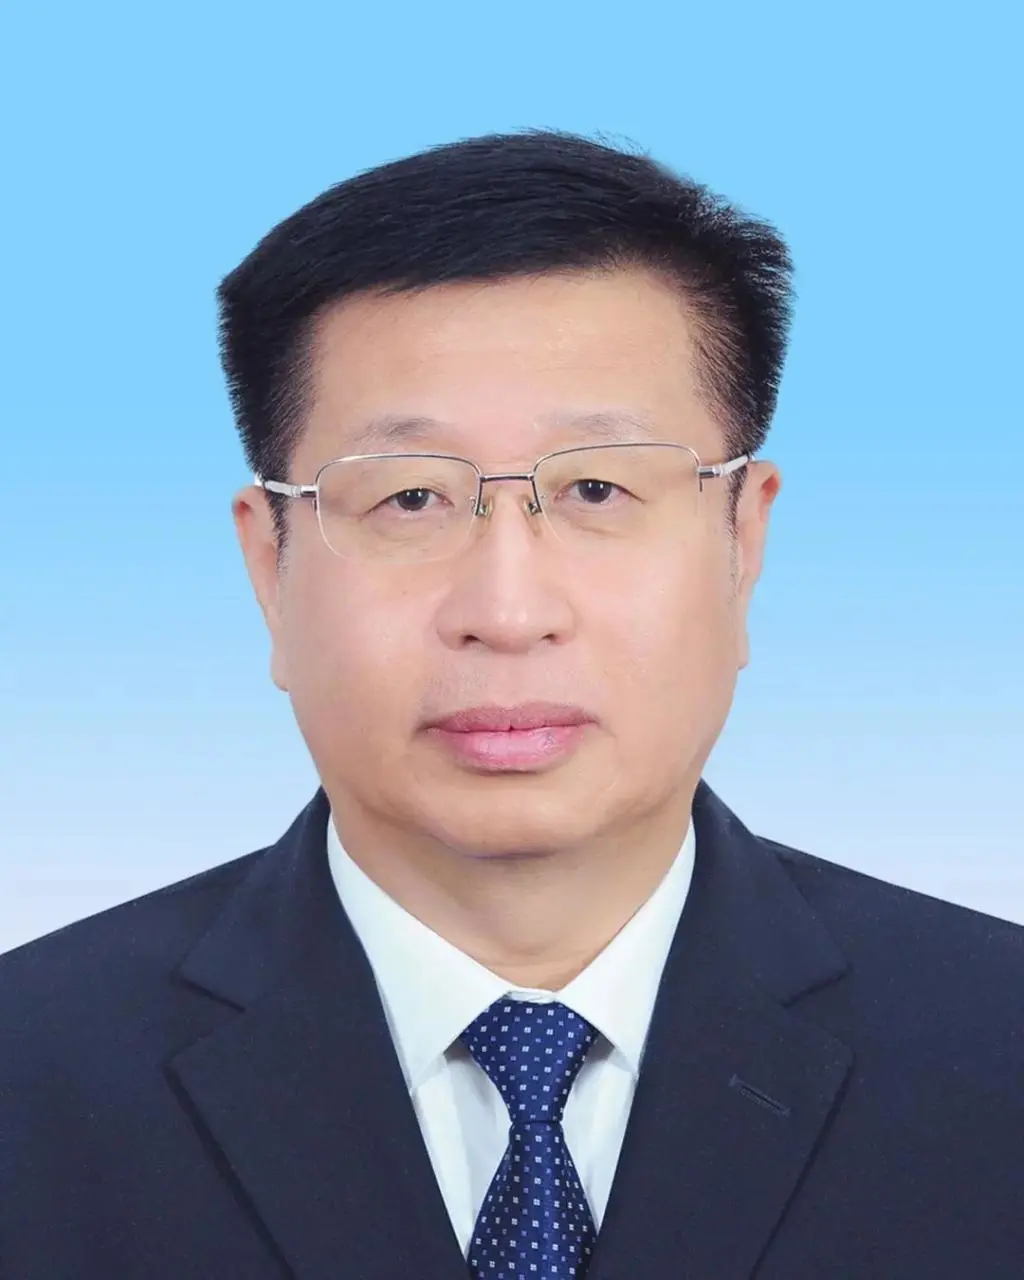 中华全国工商业联合会第十三届执行委员会主席、常务副主席、副主席简历